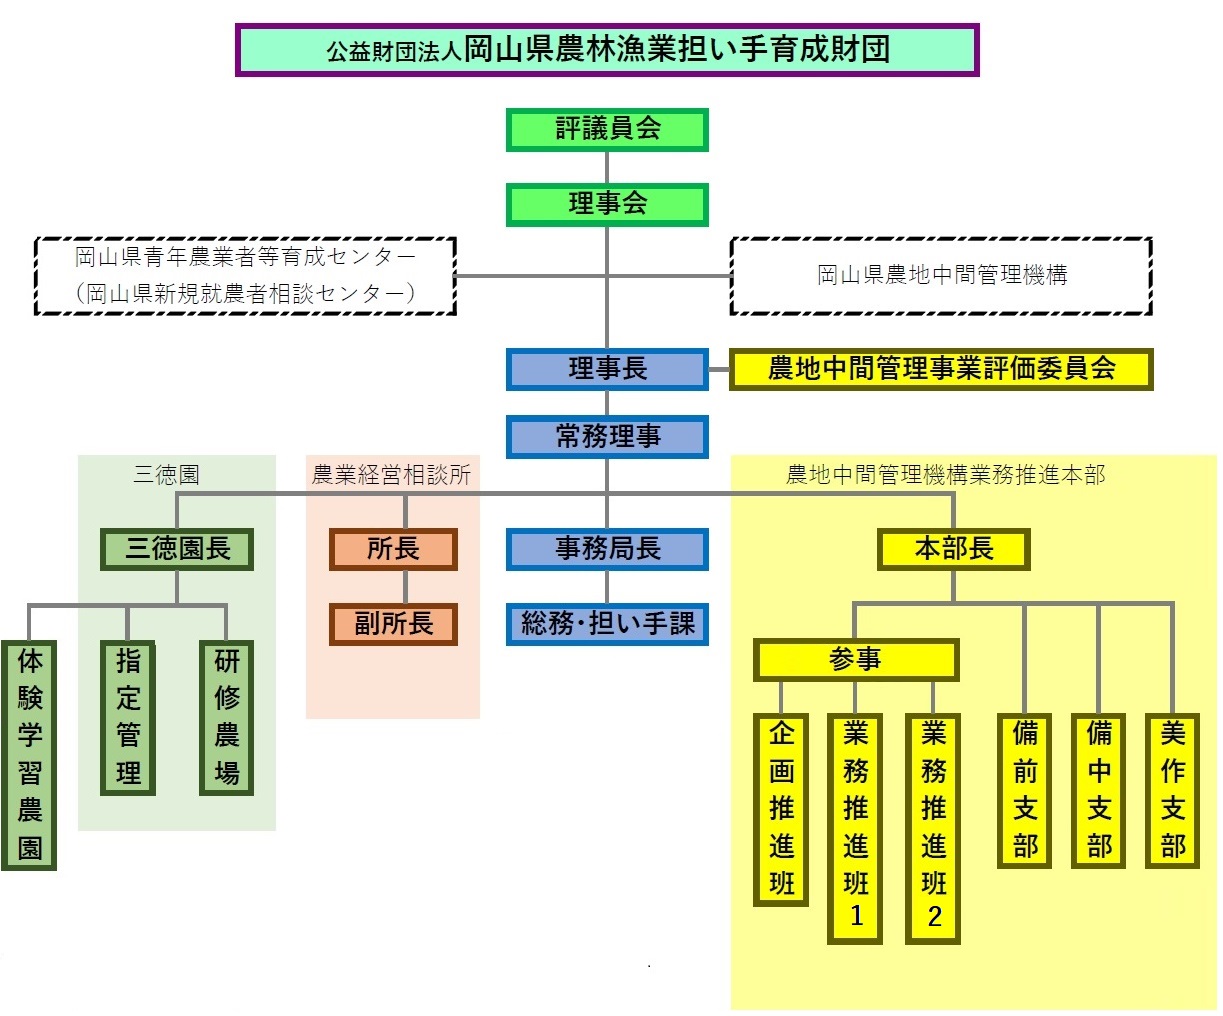 岡山県農林漁業担い手育成財団業務体制組織図